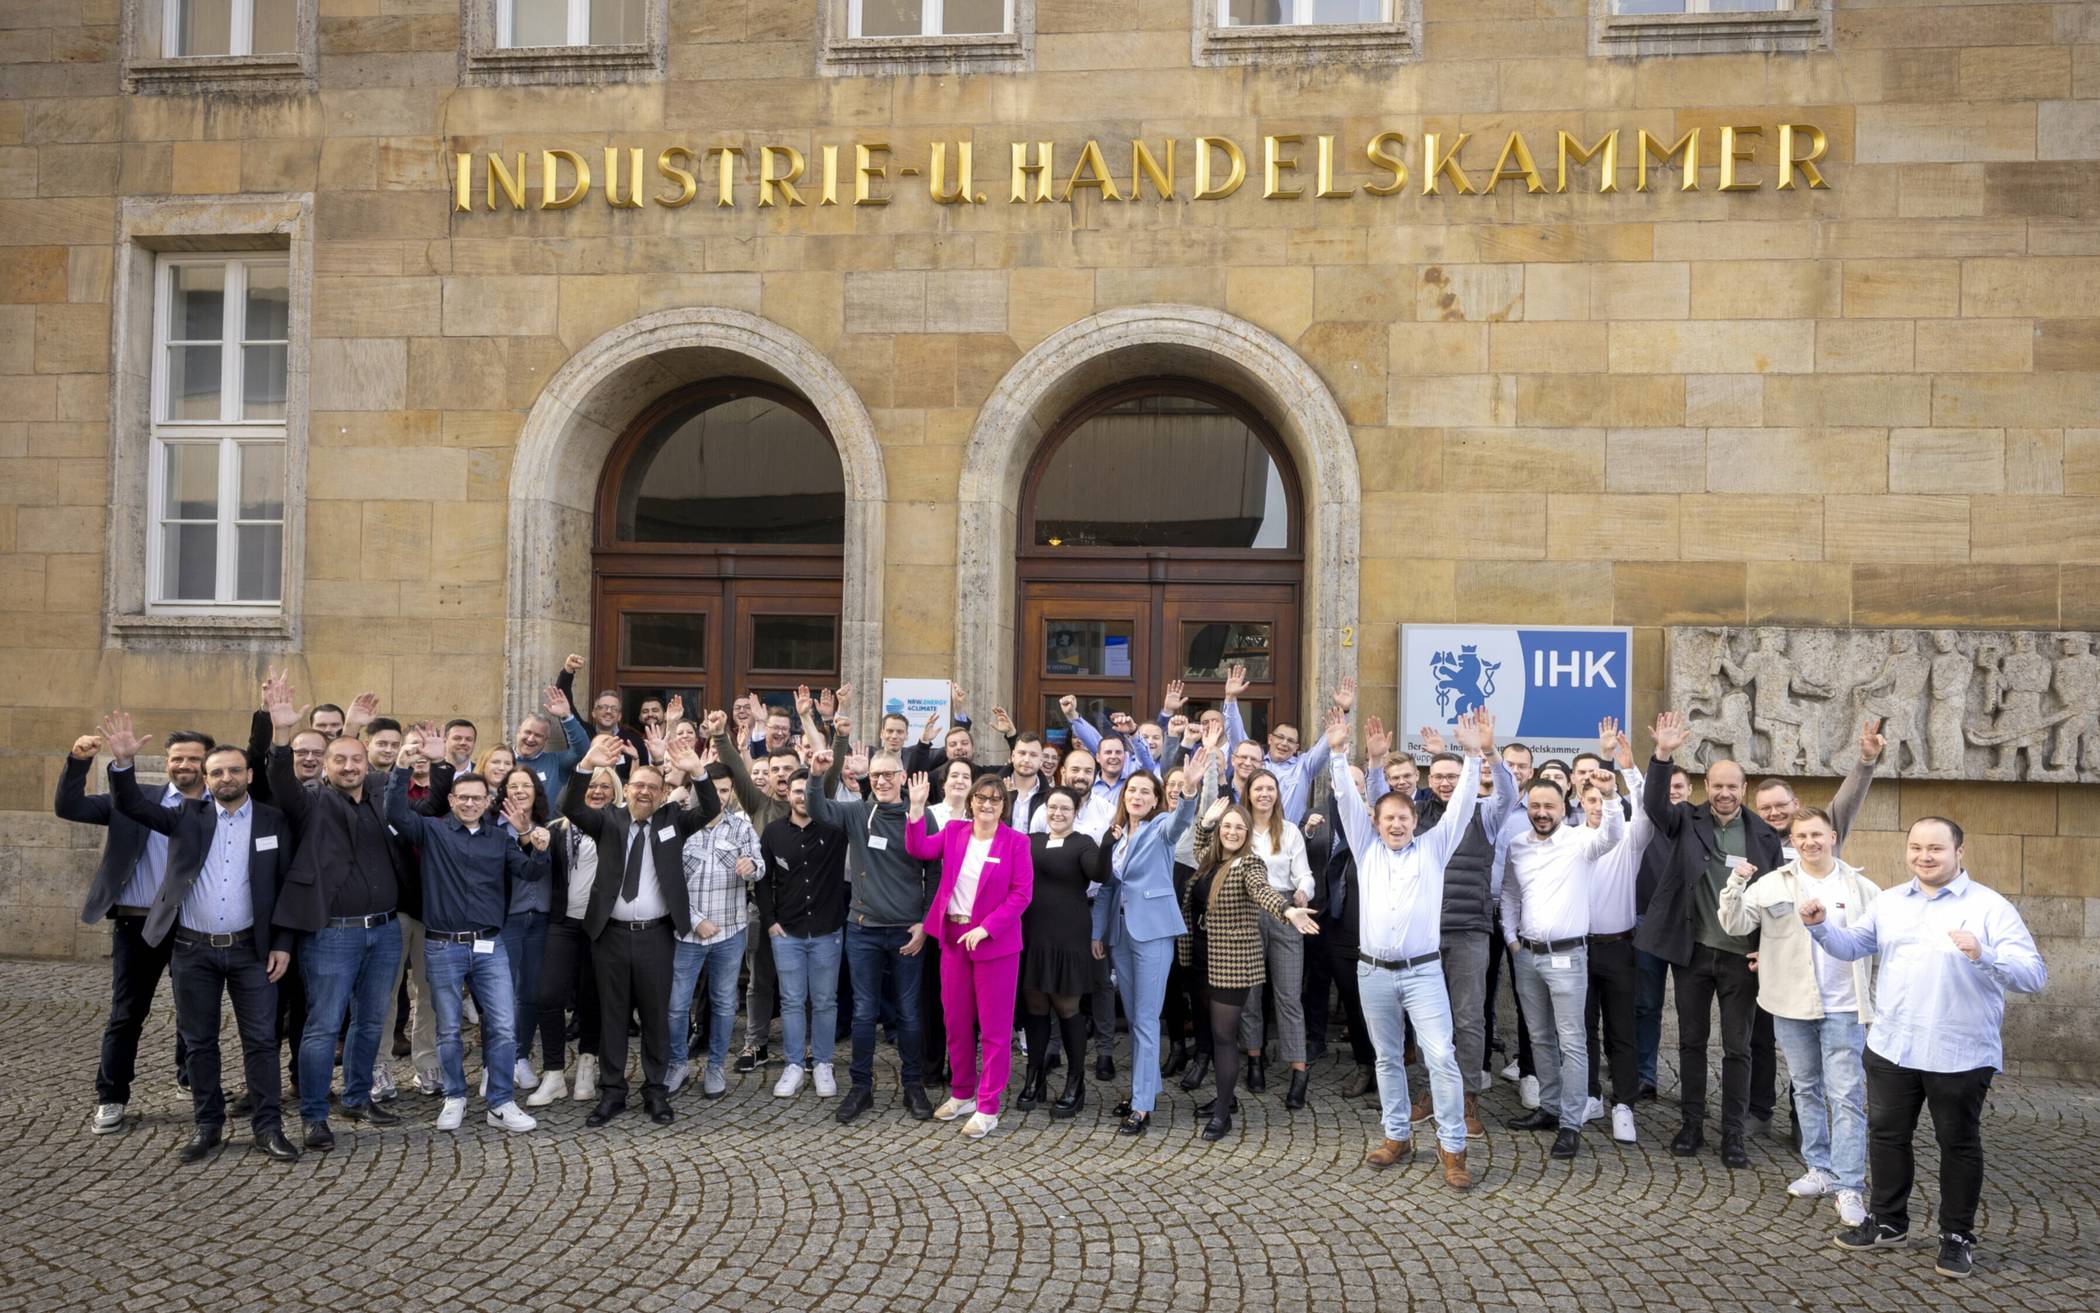  Das Gruppenfoto vor der IHK-Hauptgeschäftsstelle in Elberfeld. 